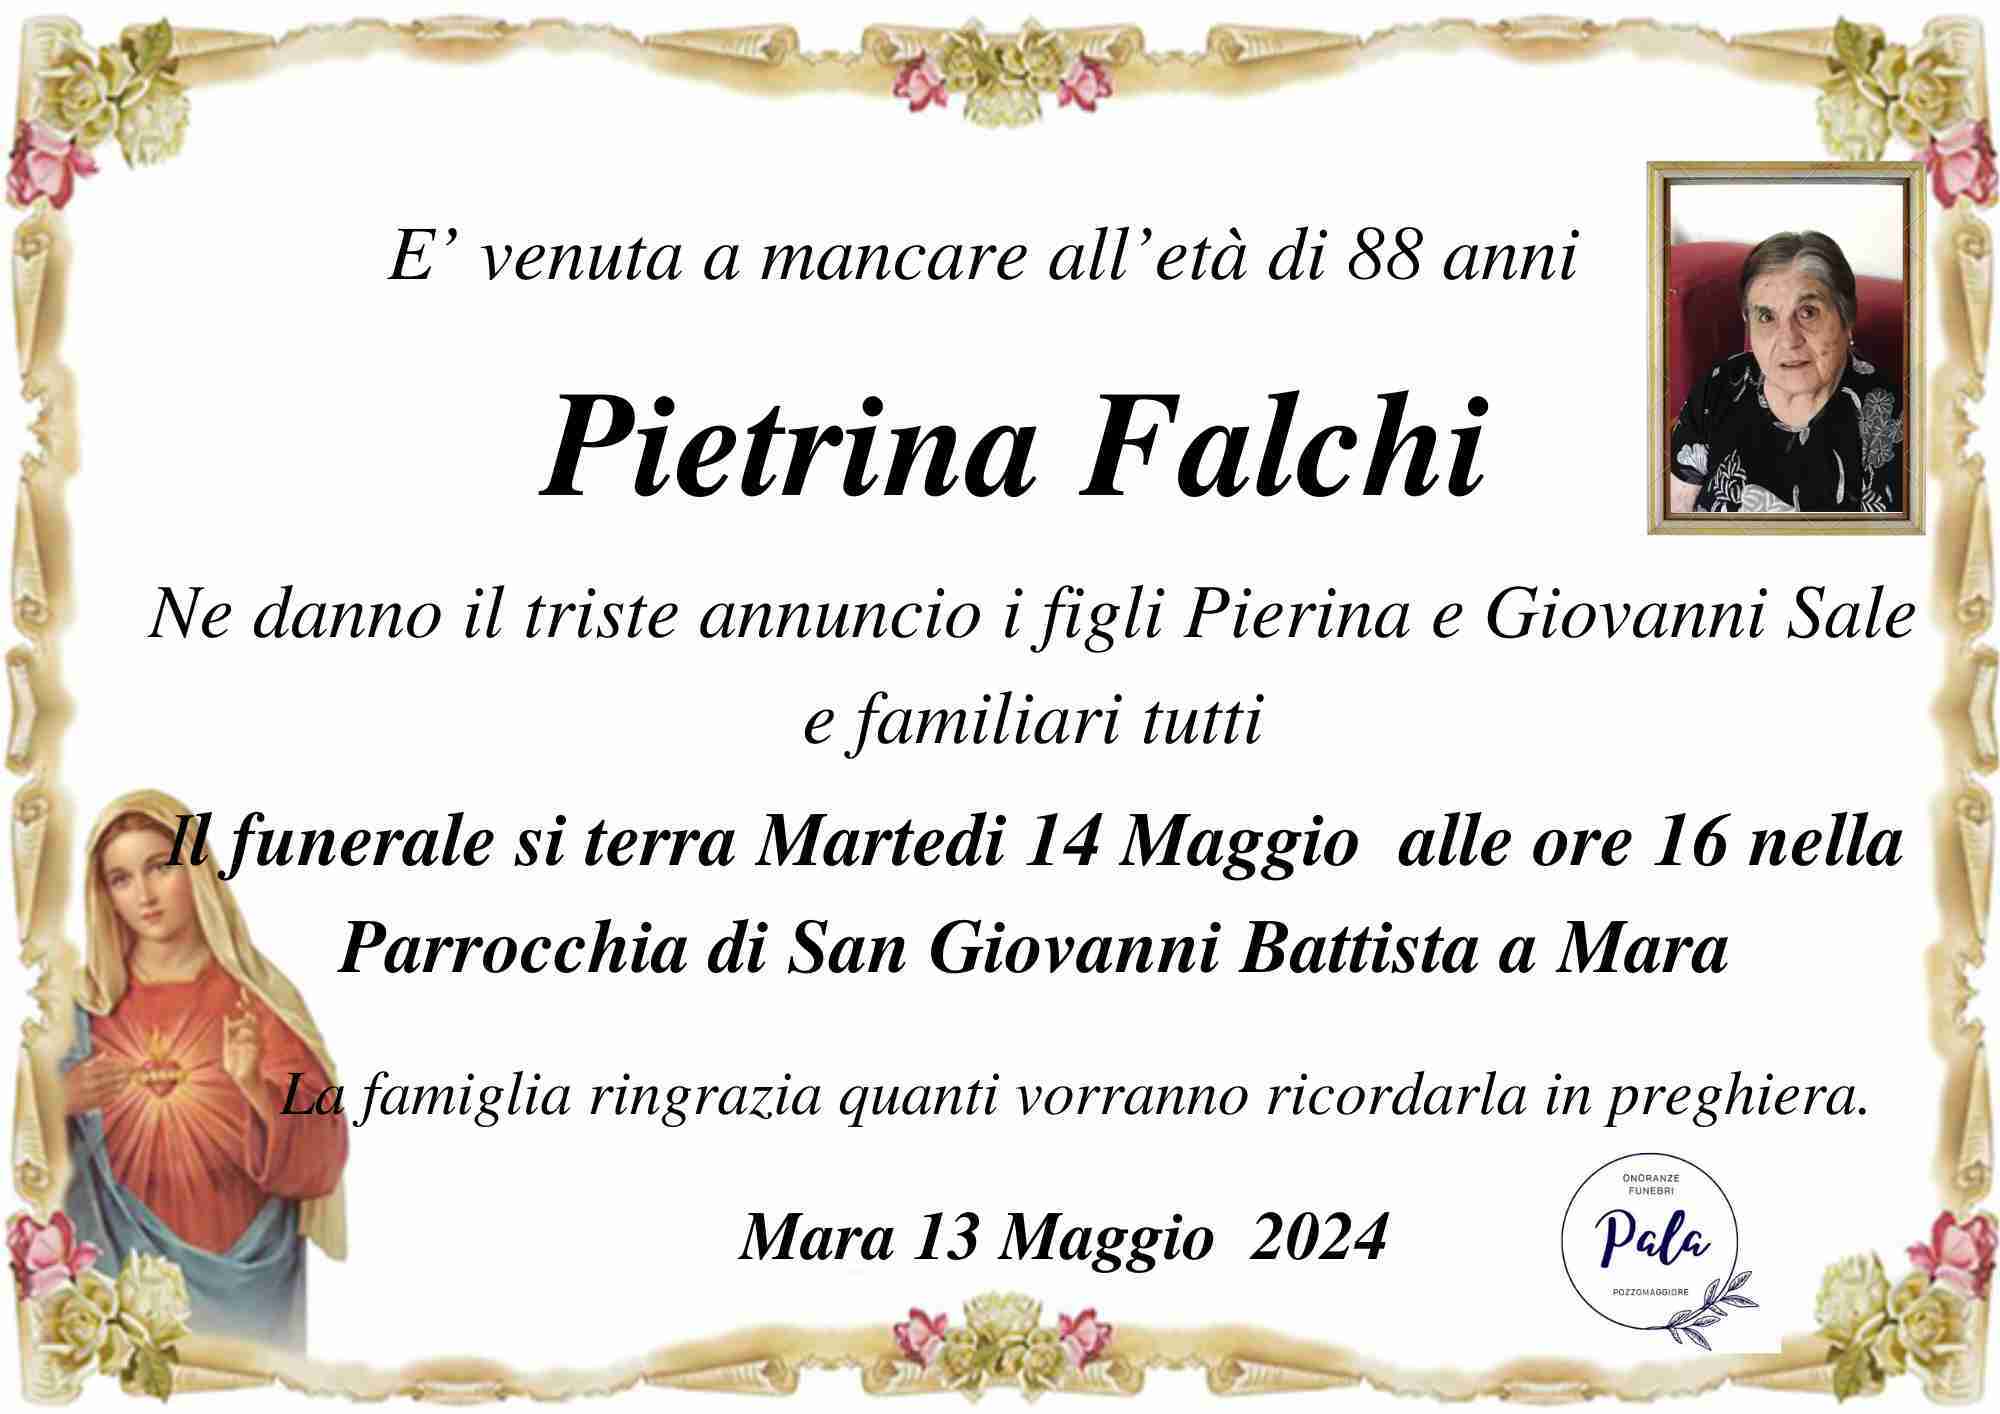 Pietrina Falchi